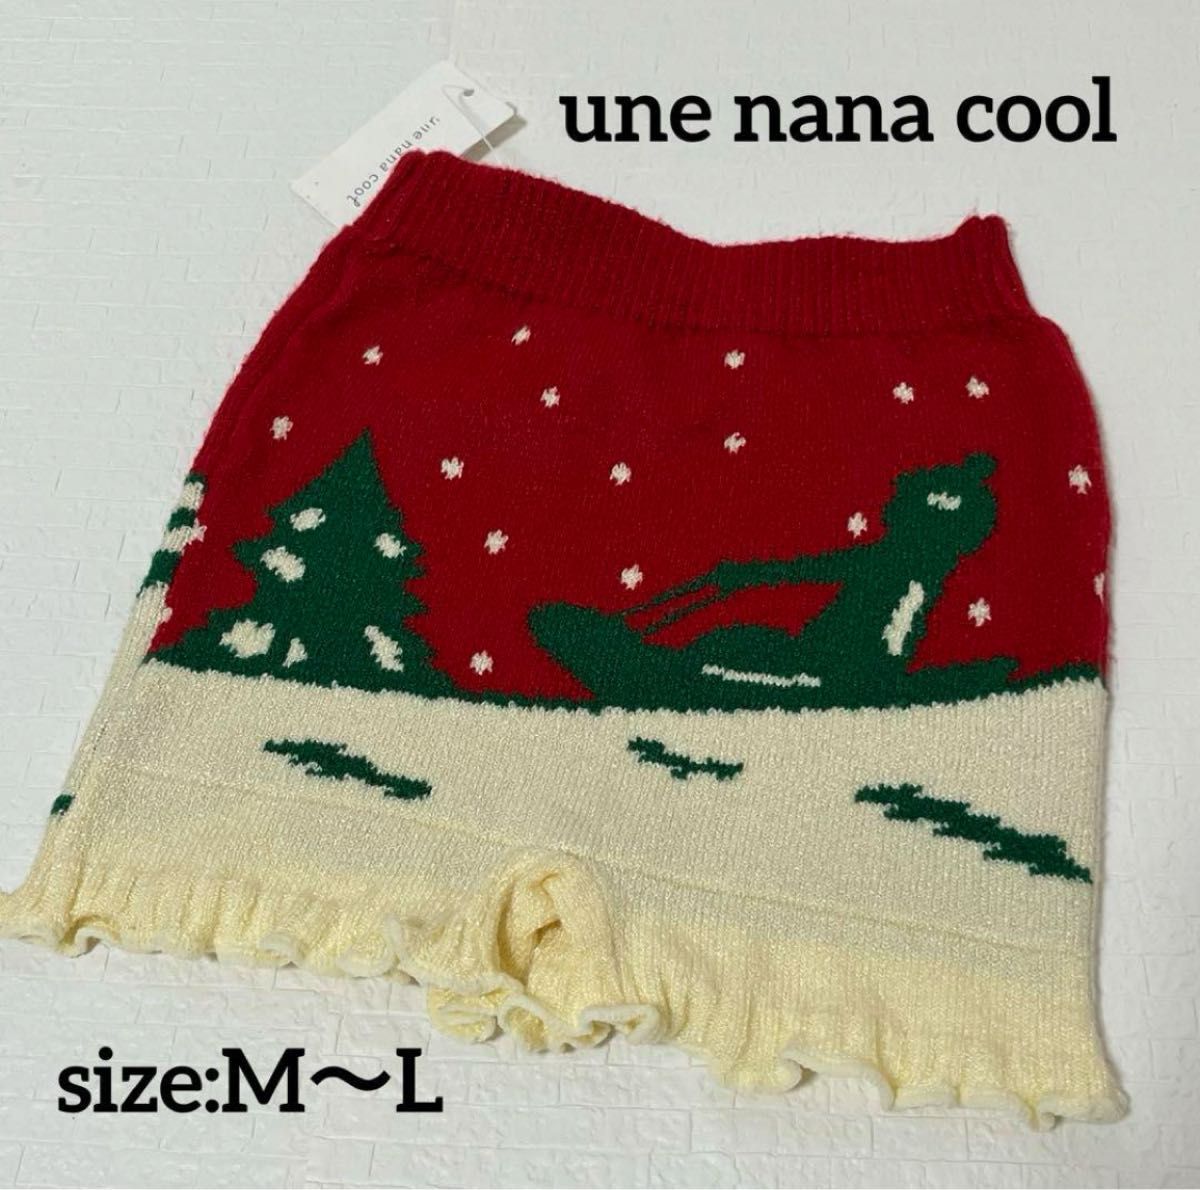 【新品】une nana cool ウンナナクール 毛糸パンツ M  L